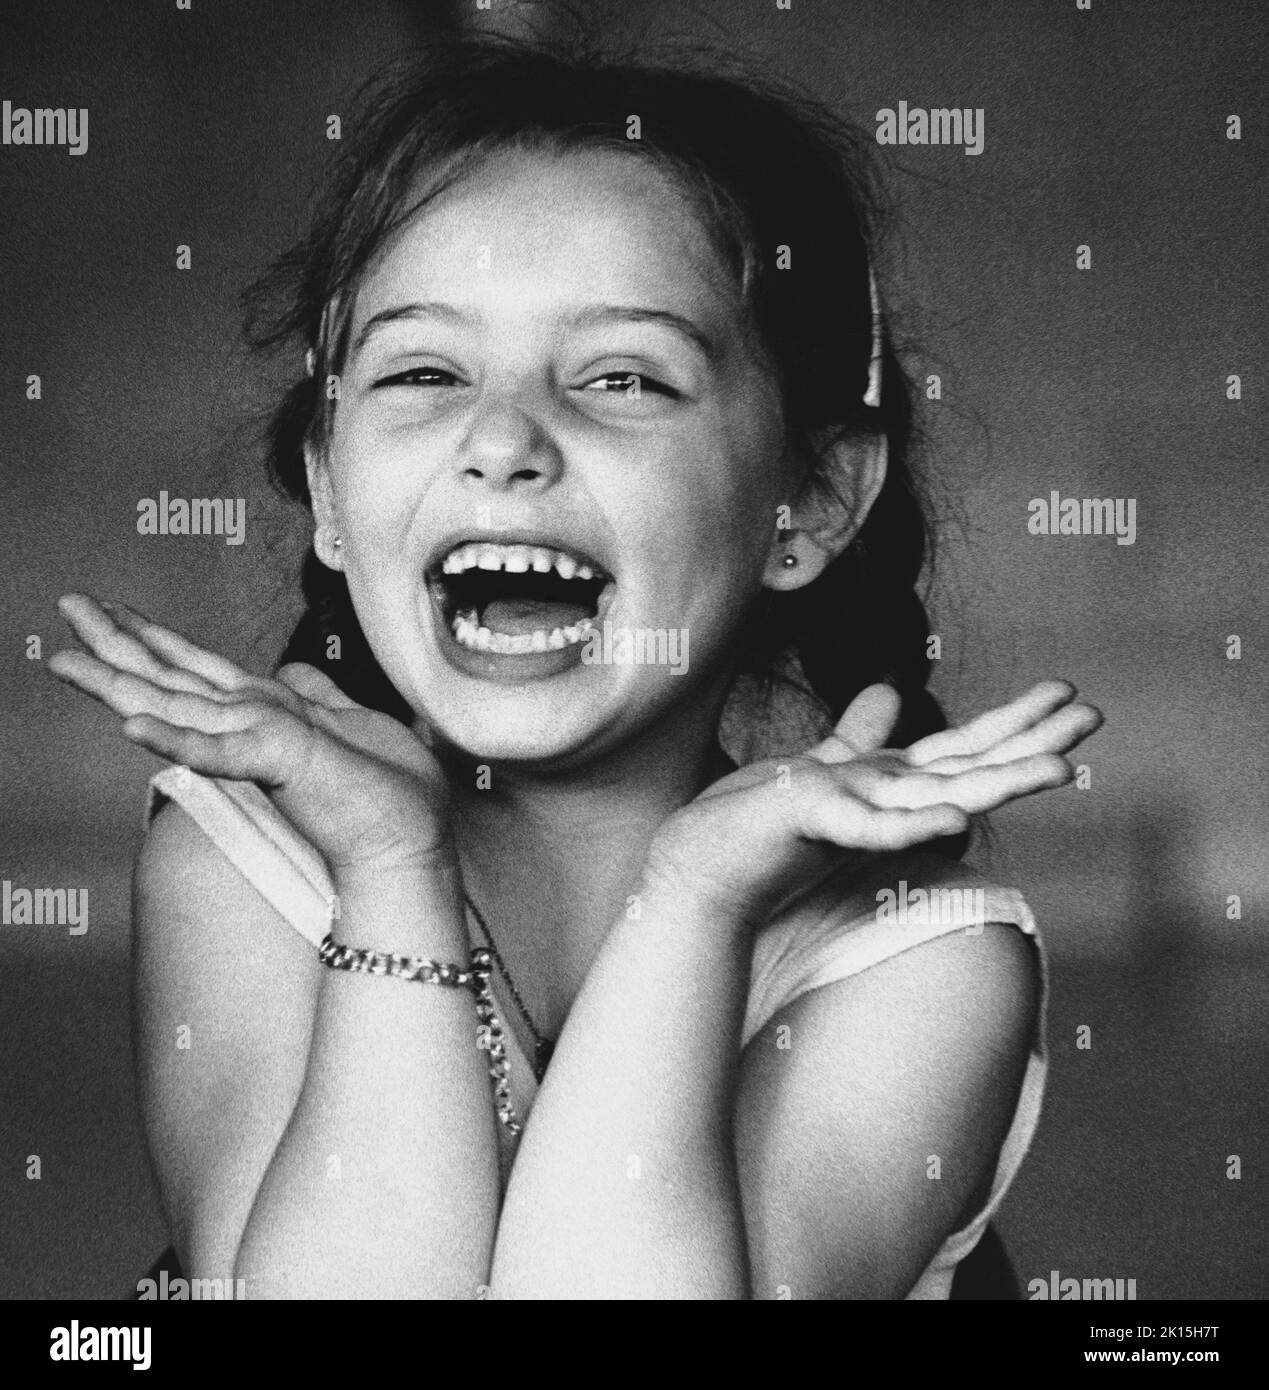 La photo est intitulée : « une jeune fille rie avec plaisir lors de la pratique du ballet à Rochester, New York ».1978 Banque D'Images